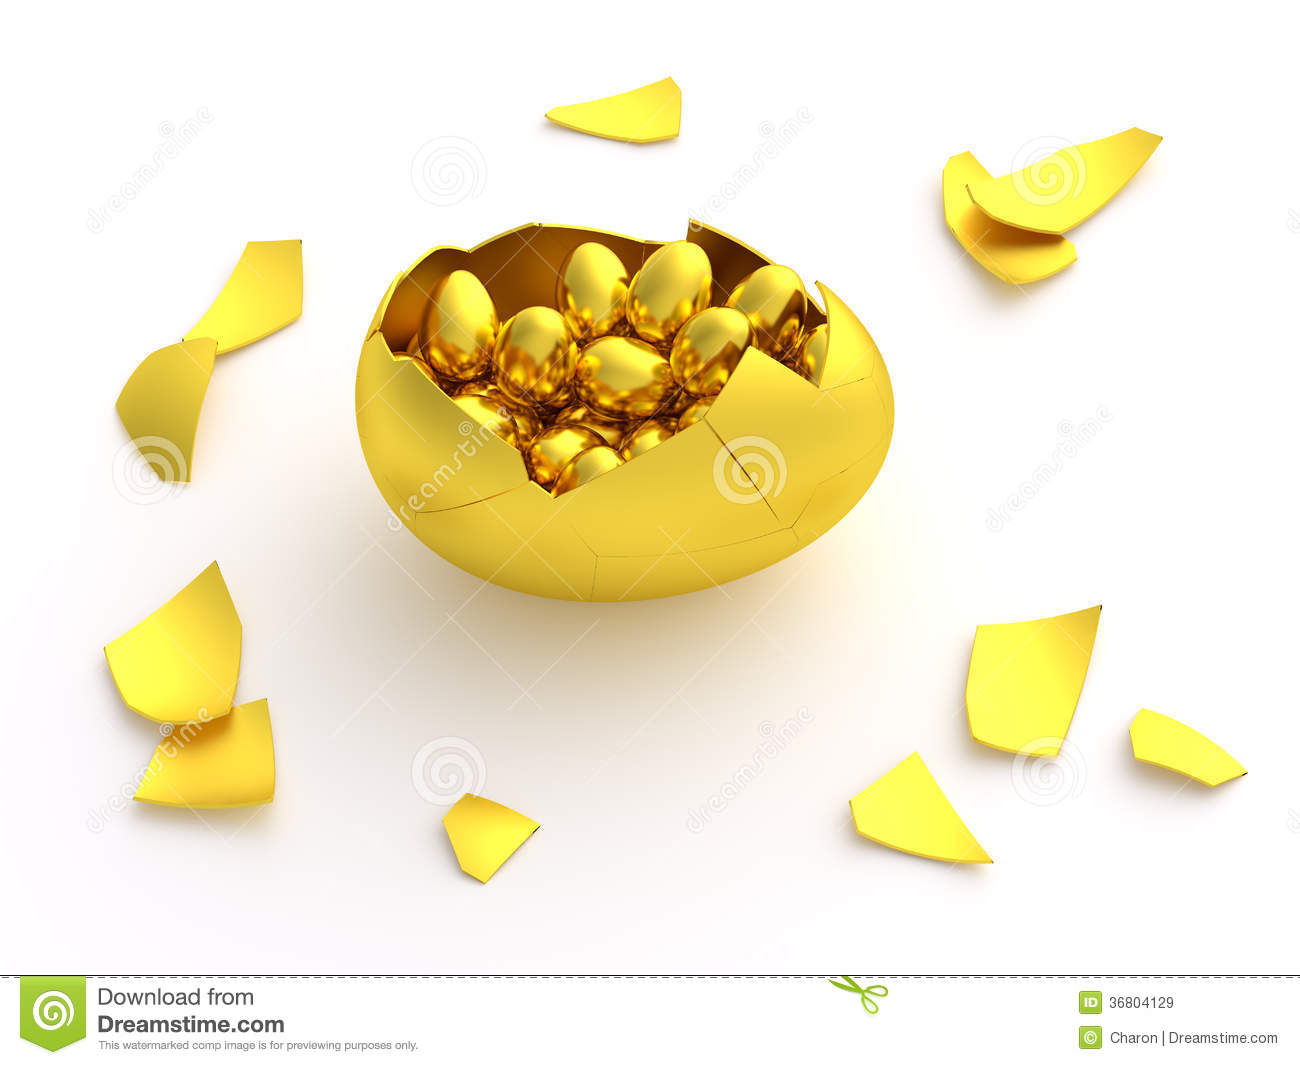 Golden Funny Cracked Egg Image